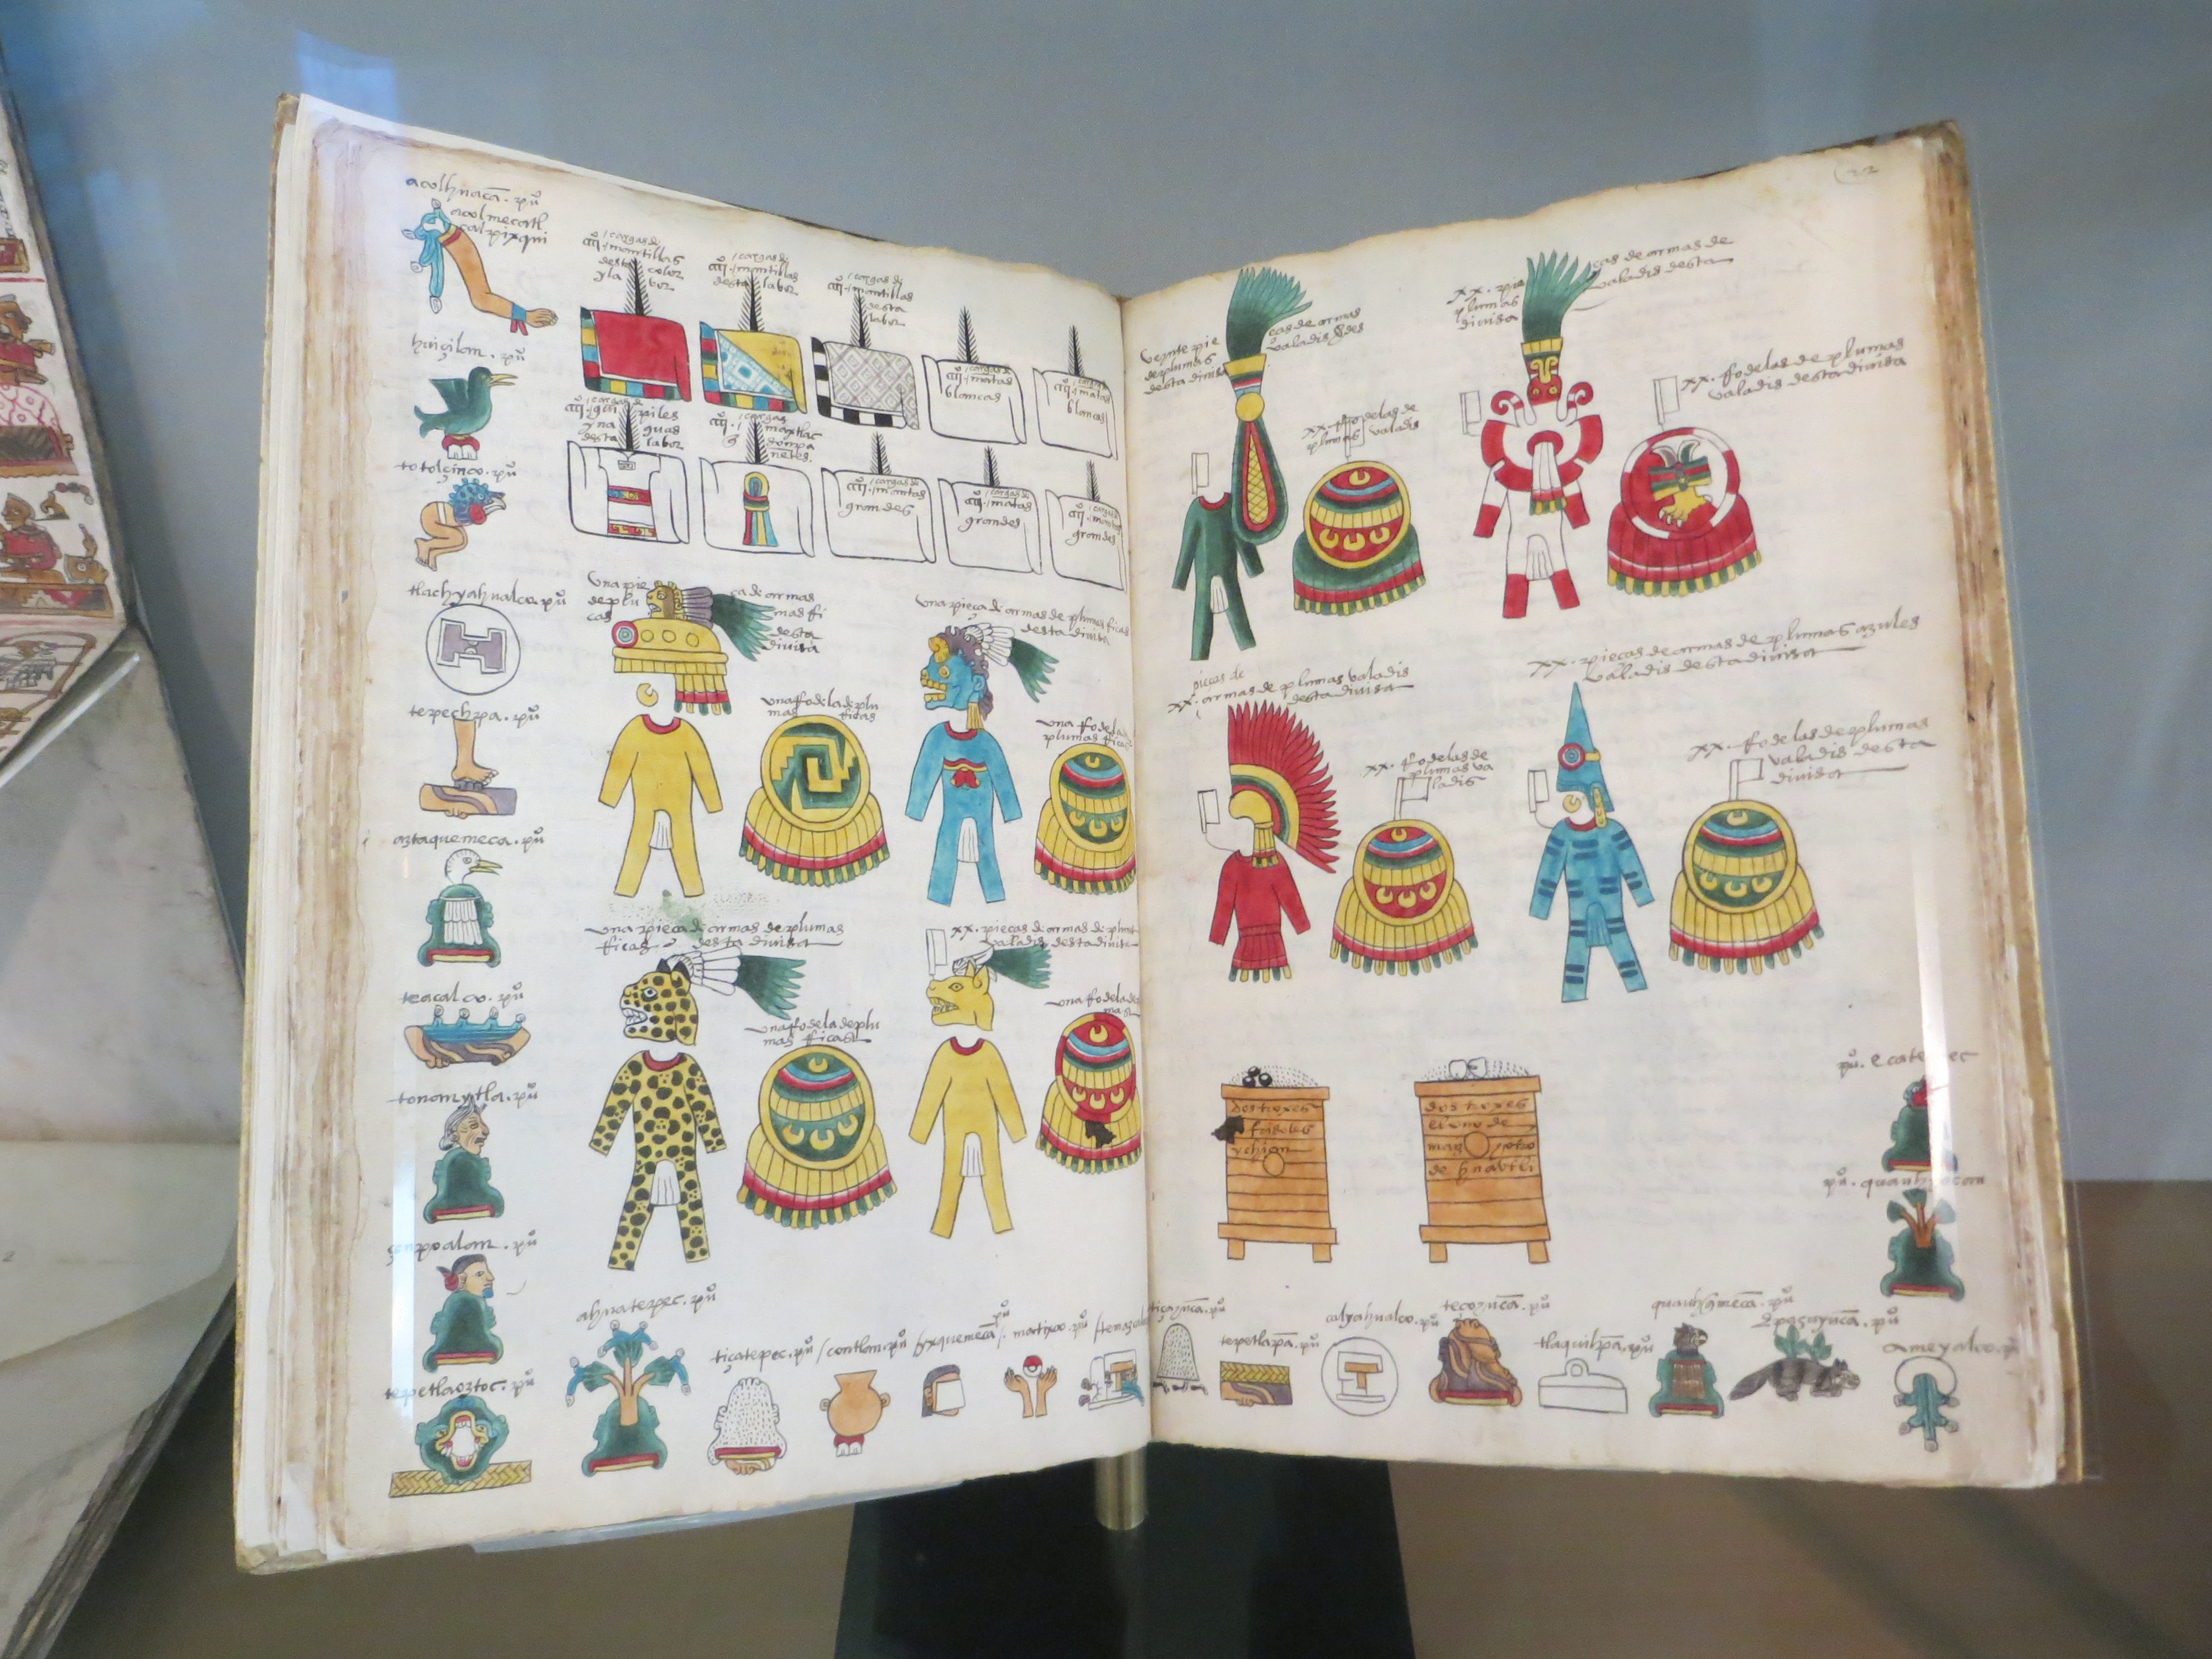 Codex Mendoza